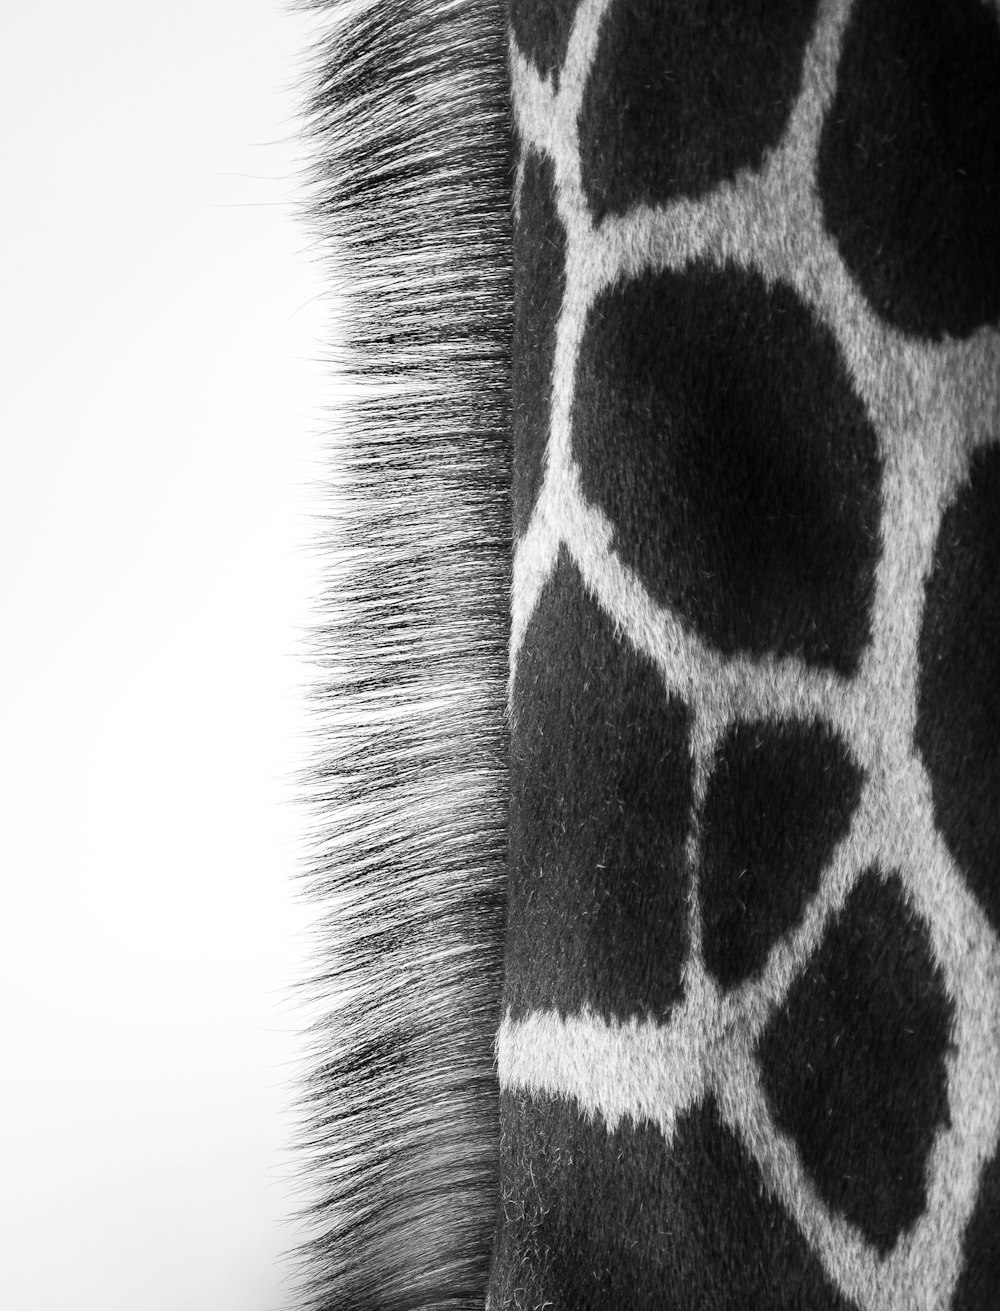 a close up of a giraffe's fur